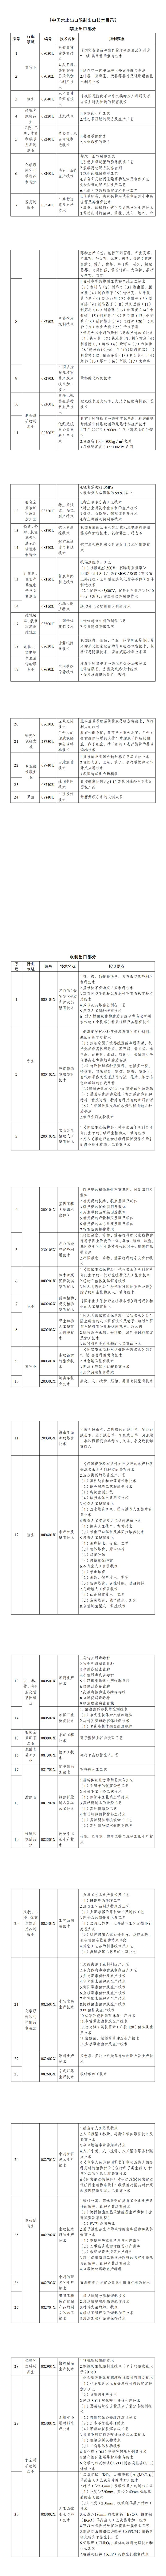 《中国禁止出口限制出口技术目录》_00.jpg